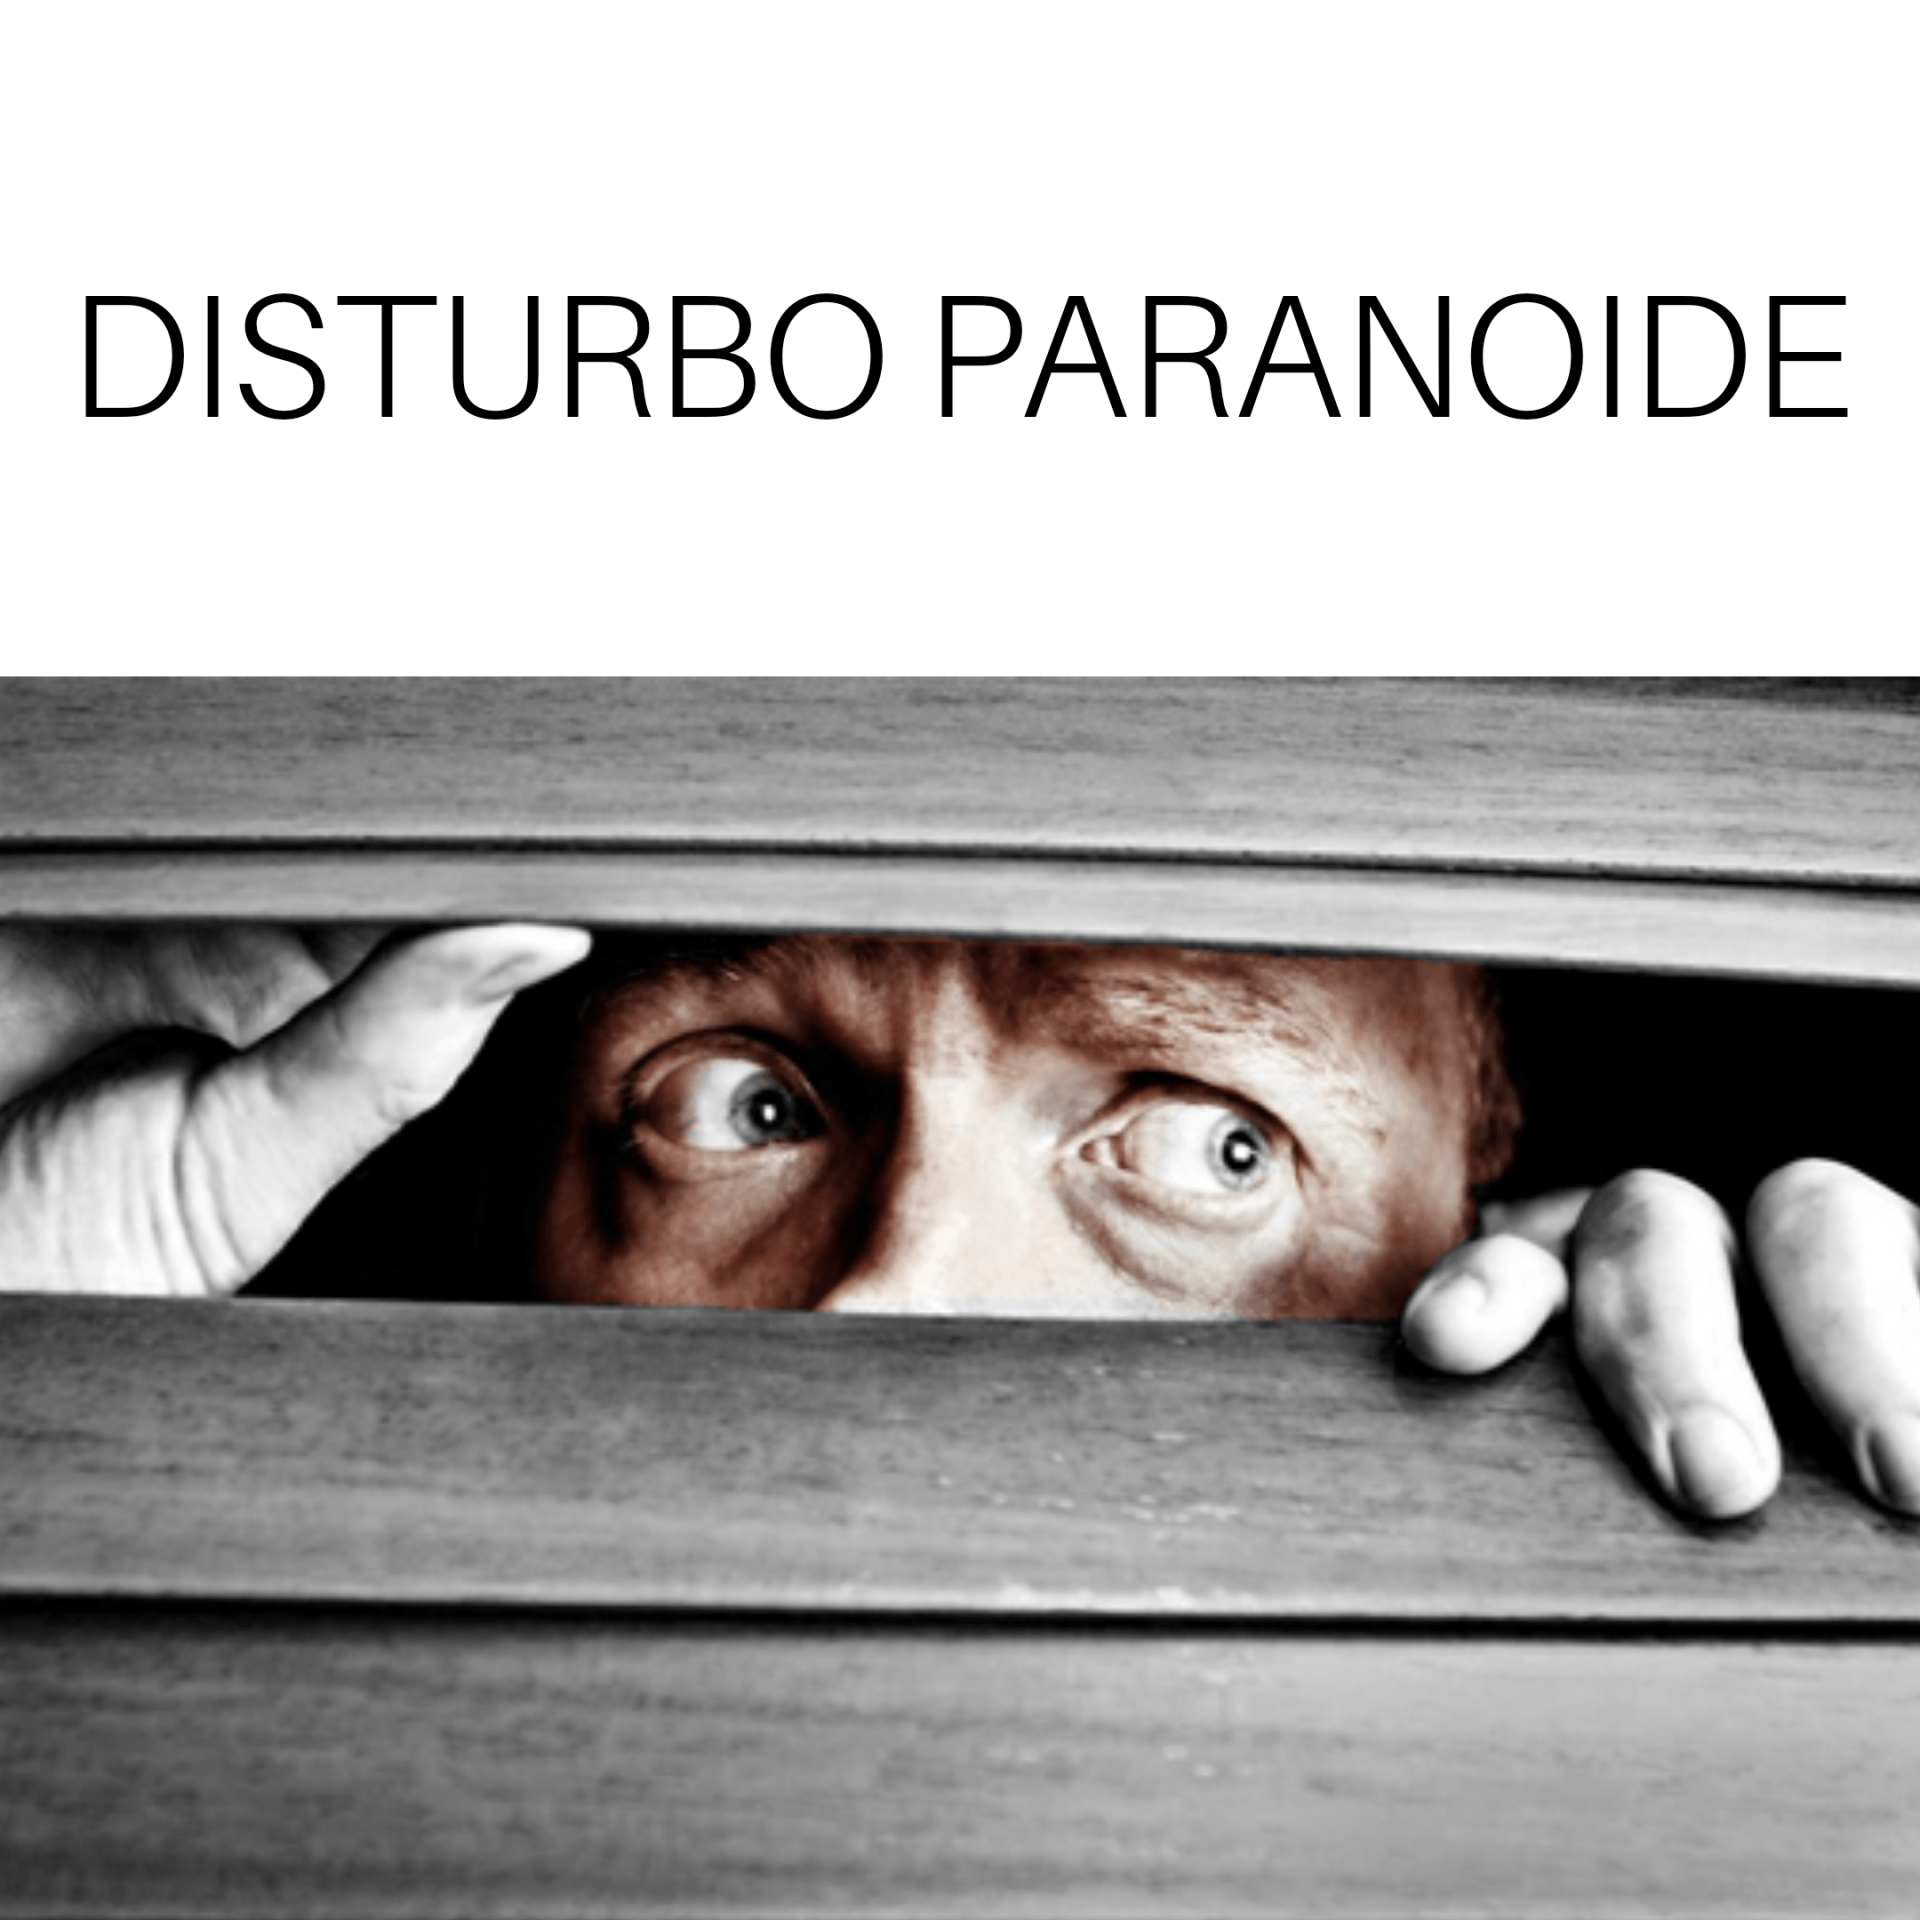 DISTURBo paranoide